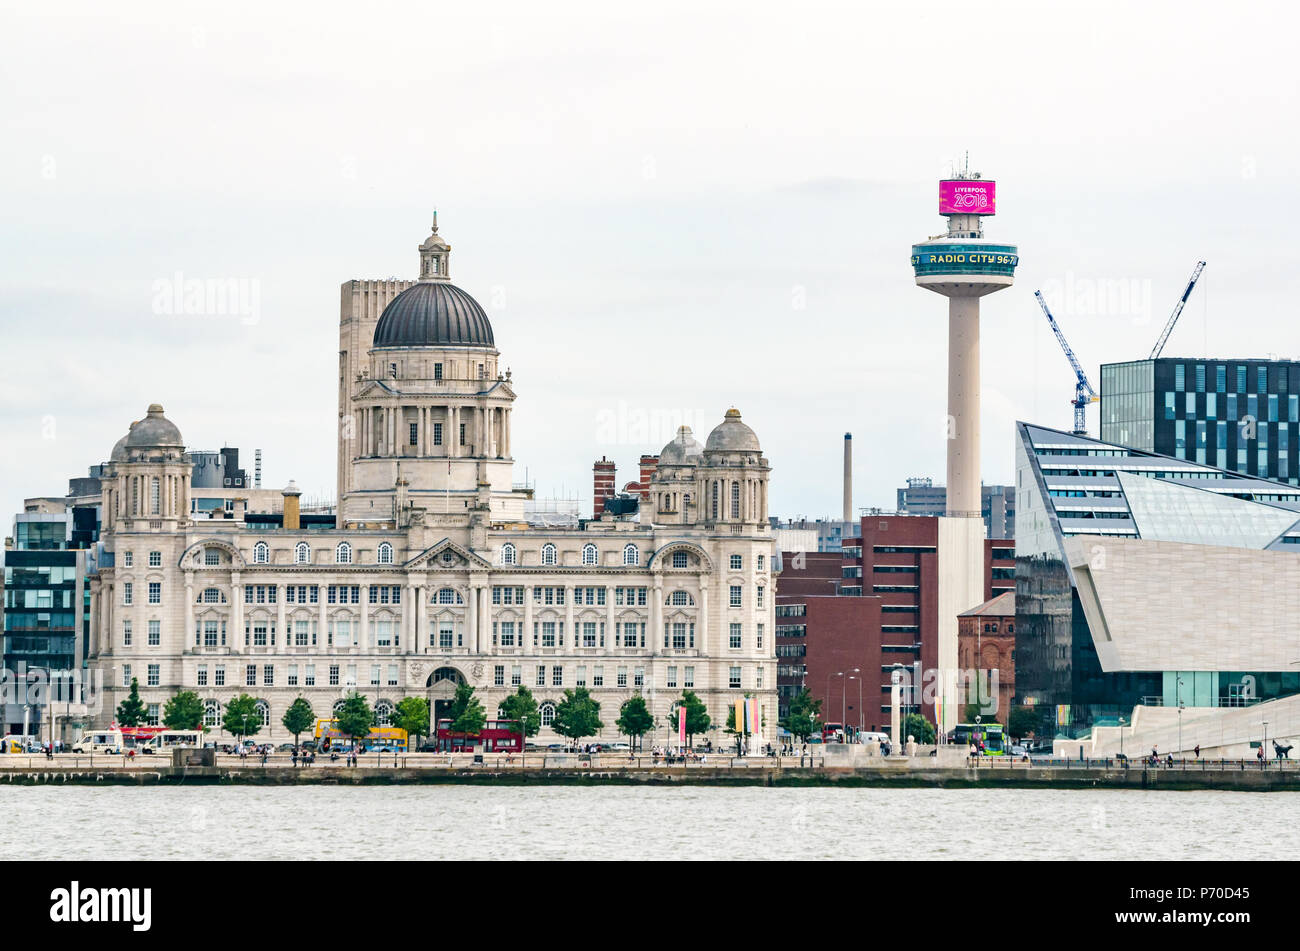 St John's Beacon Radio City Tour d'observation et d'un dôme grand port de Liverpool building, Pier Head riverside, Liverpool, Angleterre, Royaume-Uni Banque D'Images